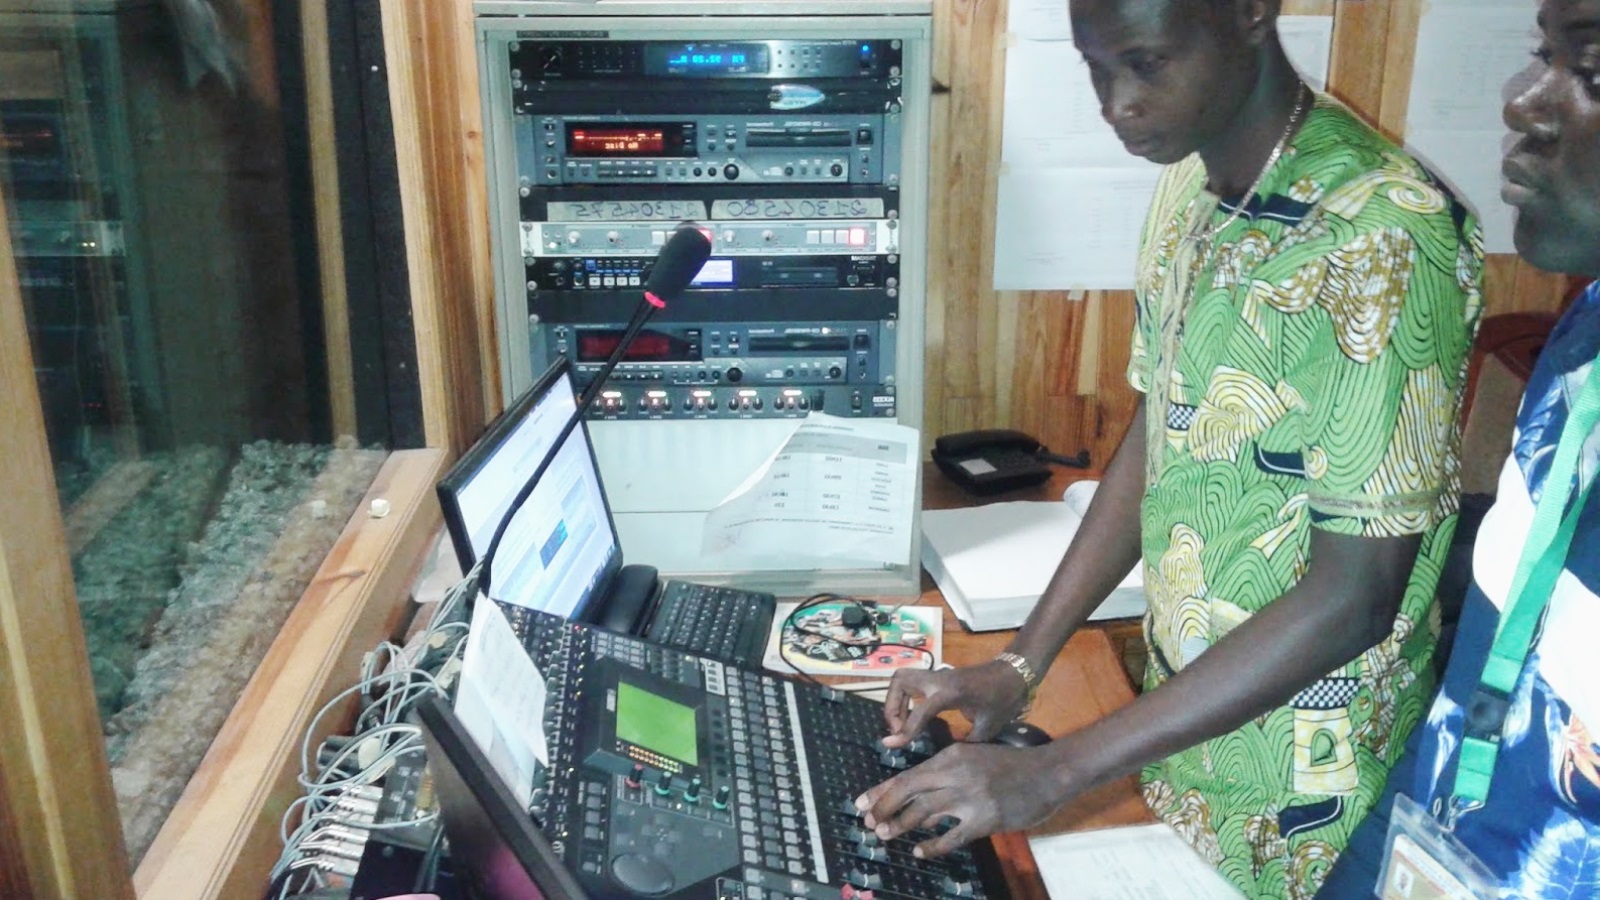 أكثر من 450 إذاعة في بينين بمعدل إذاعة واحدة لكل عشرين ألف مواطن، وهو أكبر معدل في أفريقيا (الجزيرة)